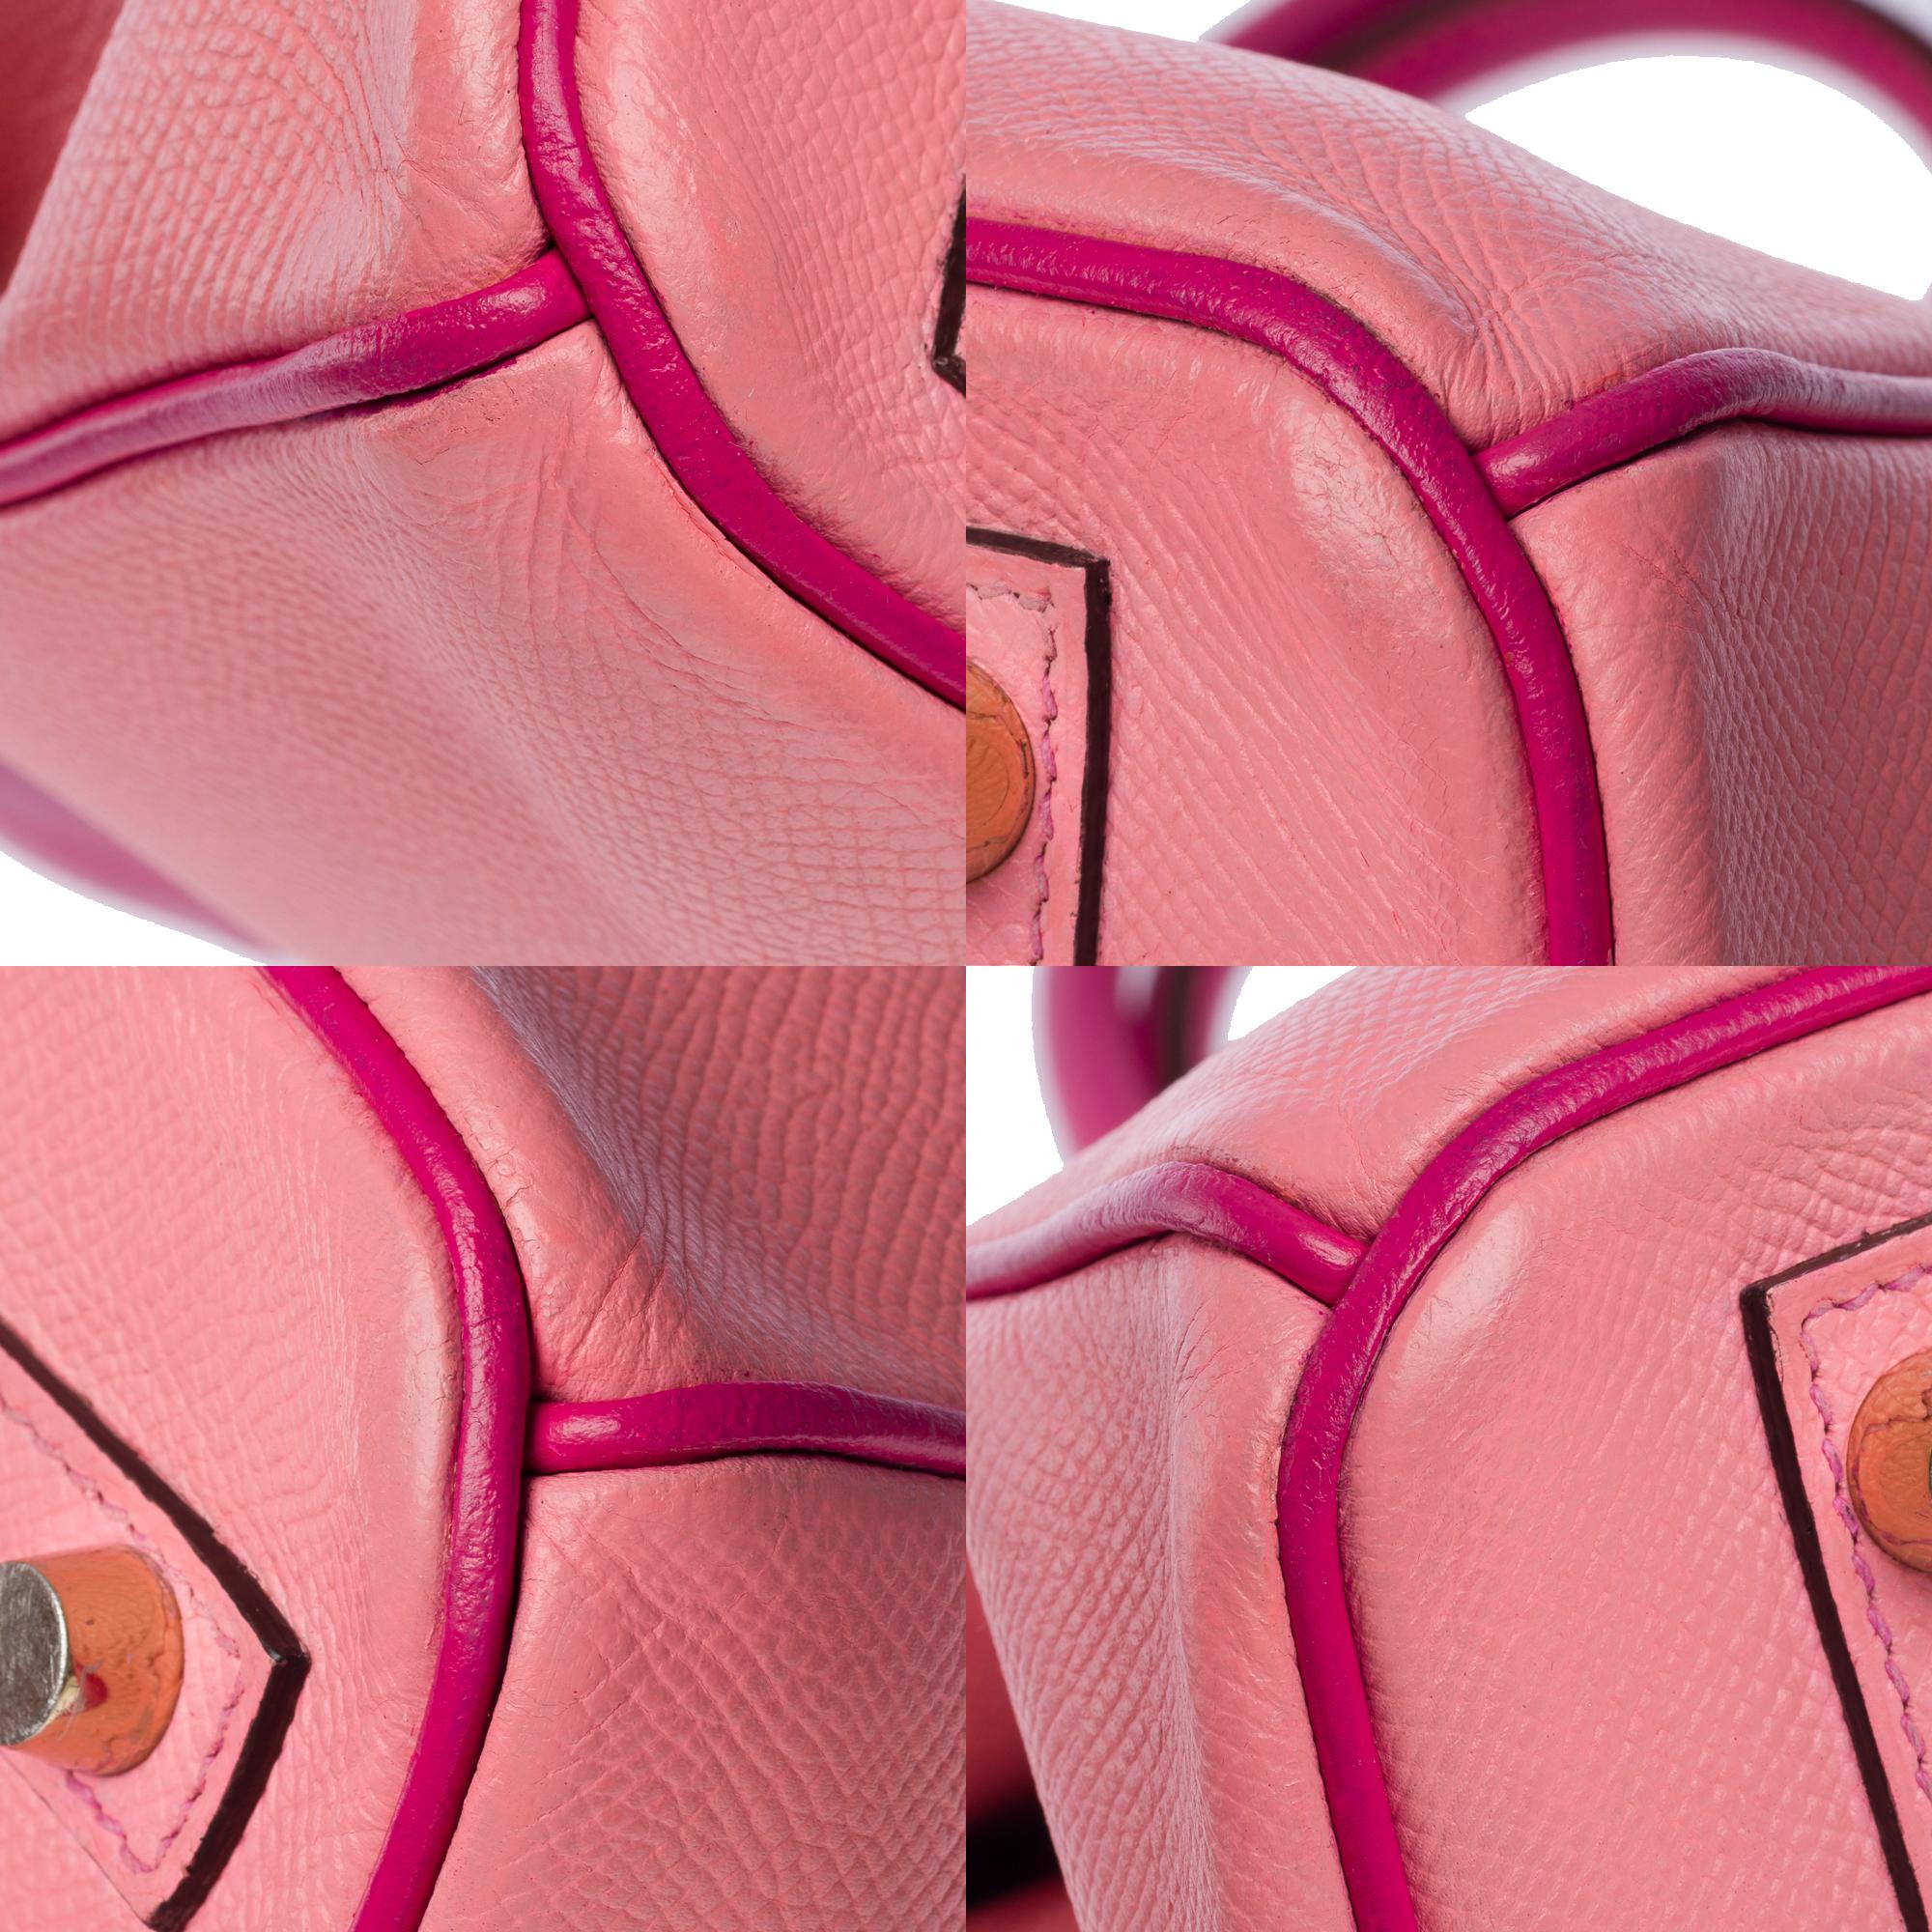  Rare Hermès Birkin 30 HSS Special Order handbag in Pink Epsom leather, BGHW For Sale 7